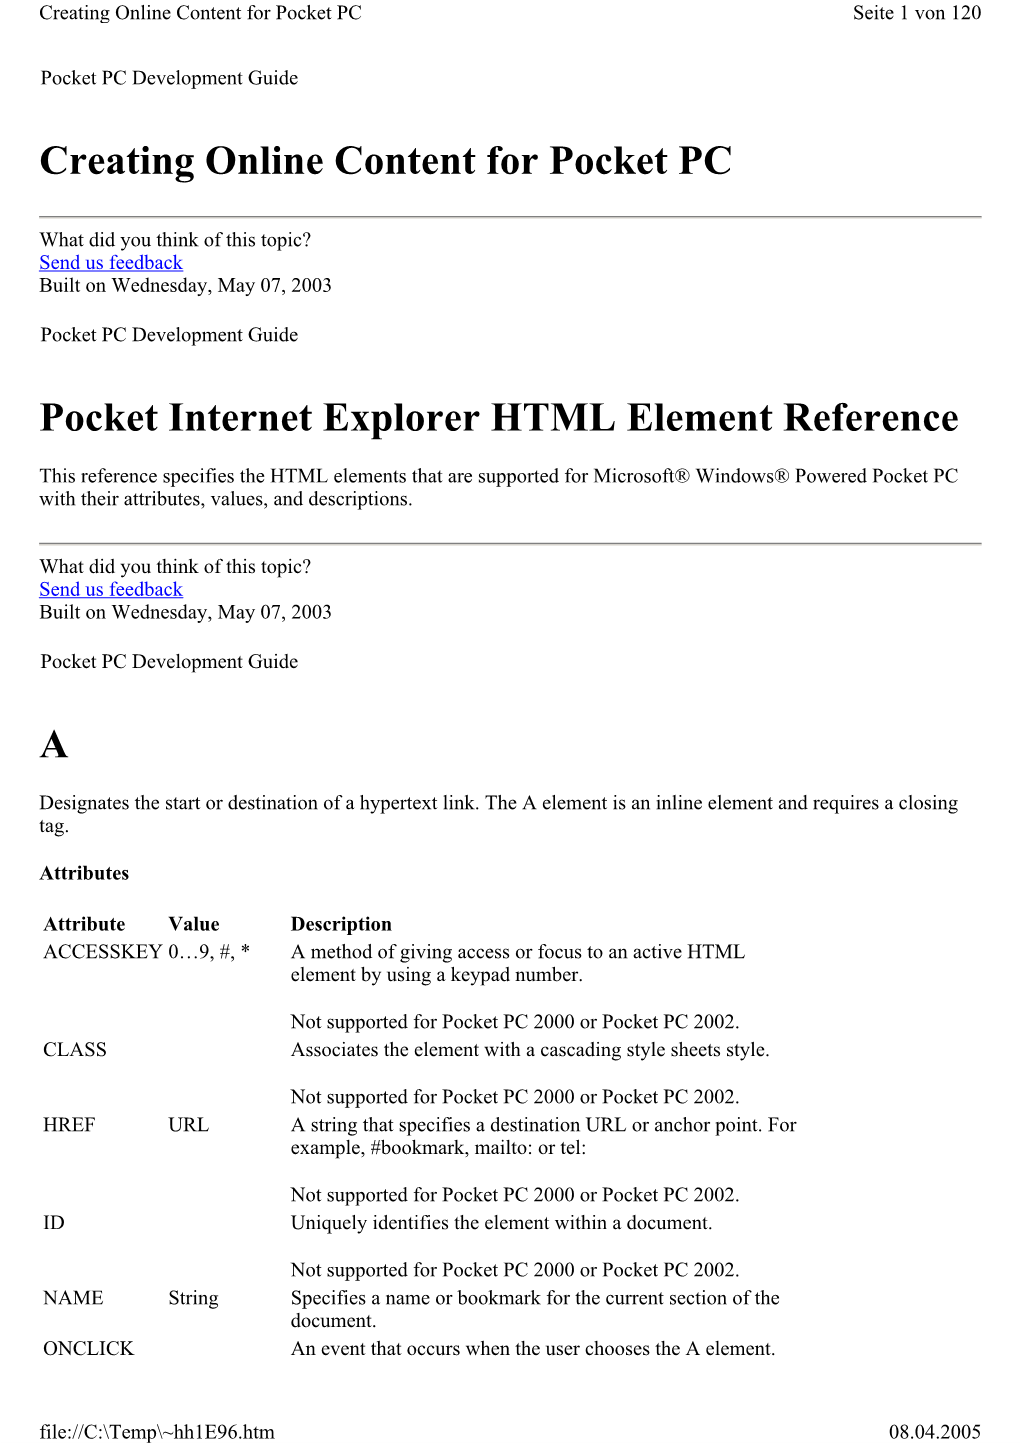 Creating Online Content for Pocket PC Pocket Internet Explorer HTML